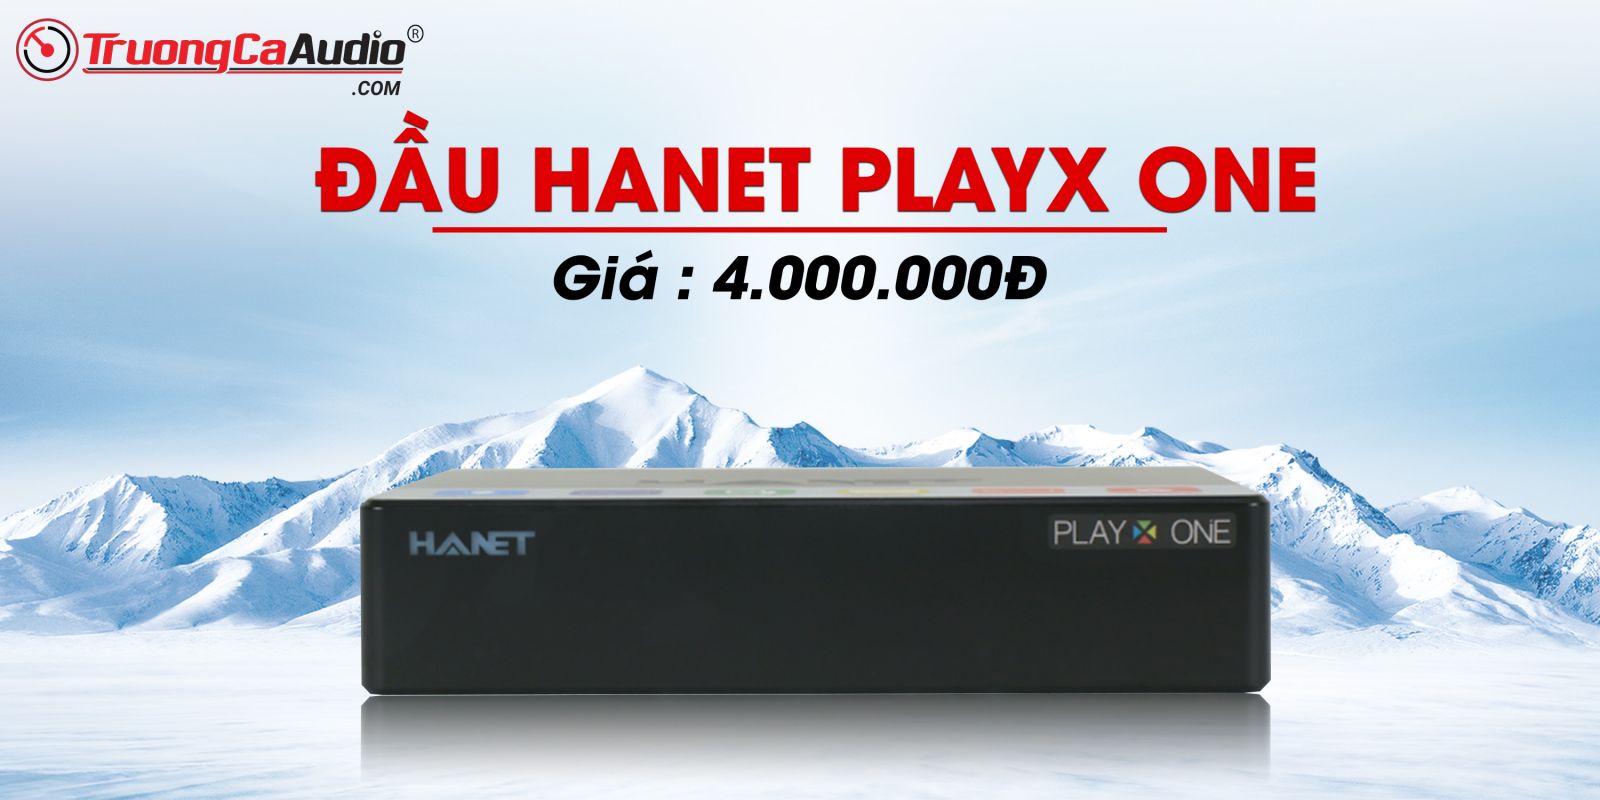 Đầu Hanet play X one là dòng đầu phát karaoke cao cấp dành cho dàn karaoke gia đình và kinh doanh